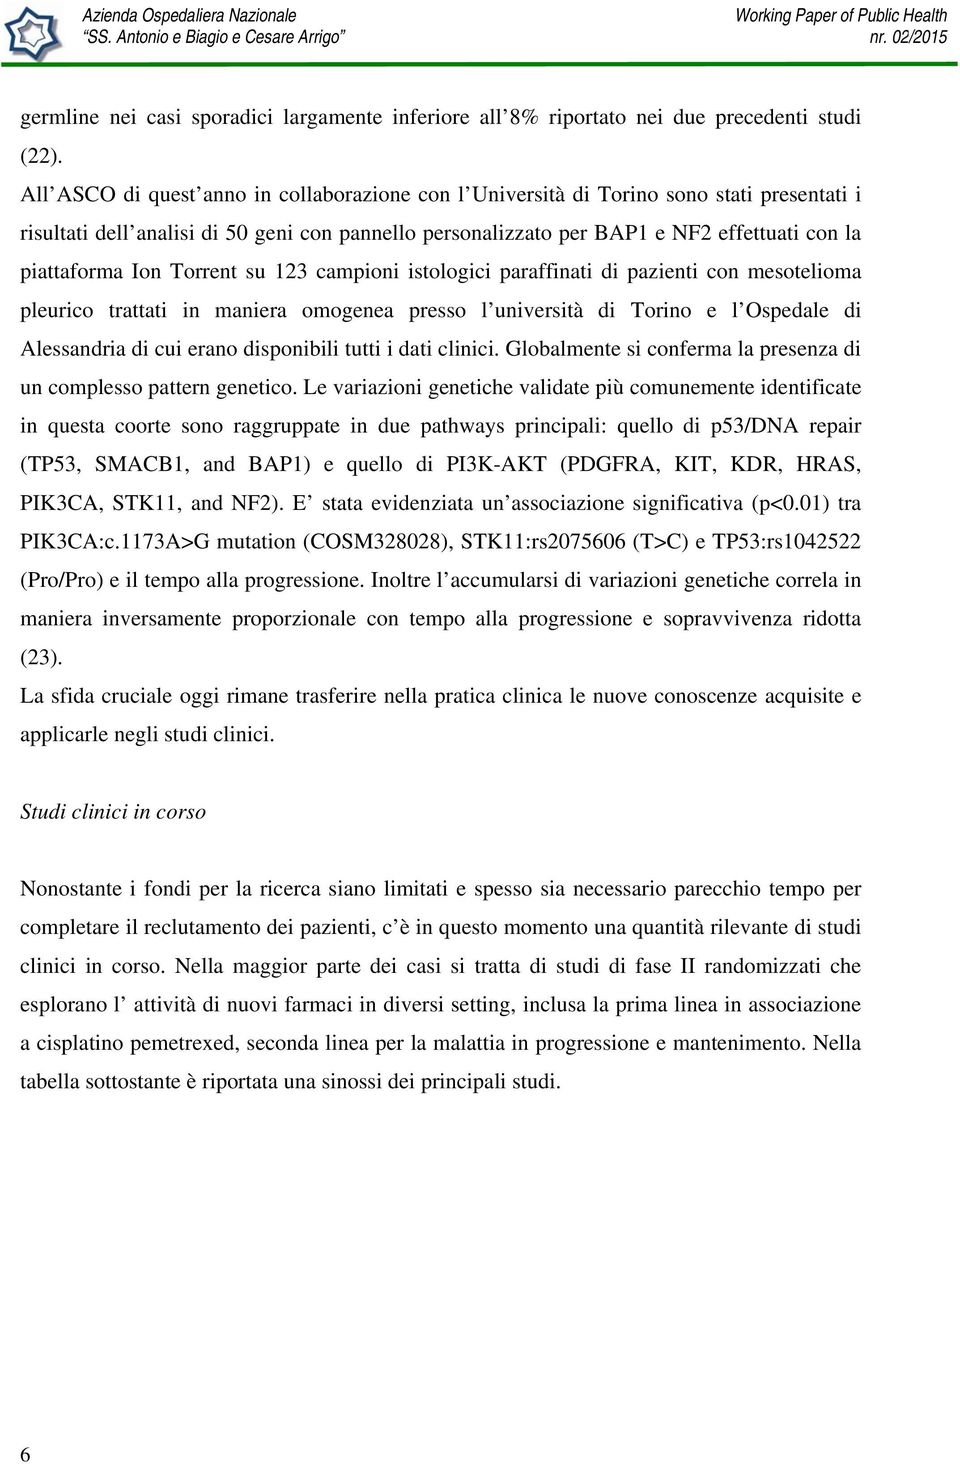 Ion Torrent su 123 campioni istologici paraffinati di pazienti con mesotelioma pleurico trattati in maniera omogenea presso l università di Torino e l Ospedale di Alessandria di cui erano disponibili